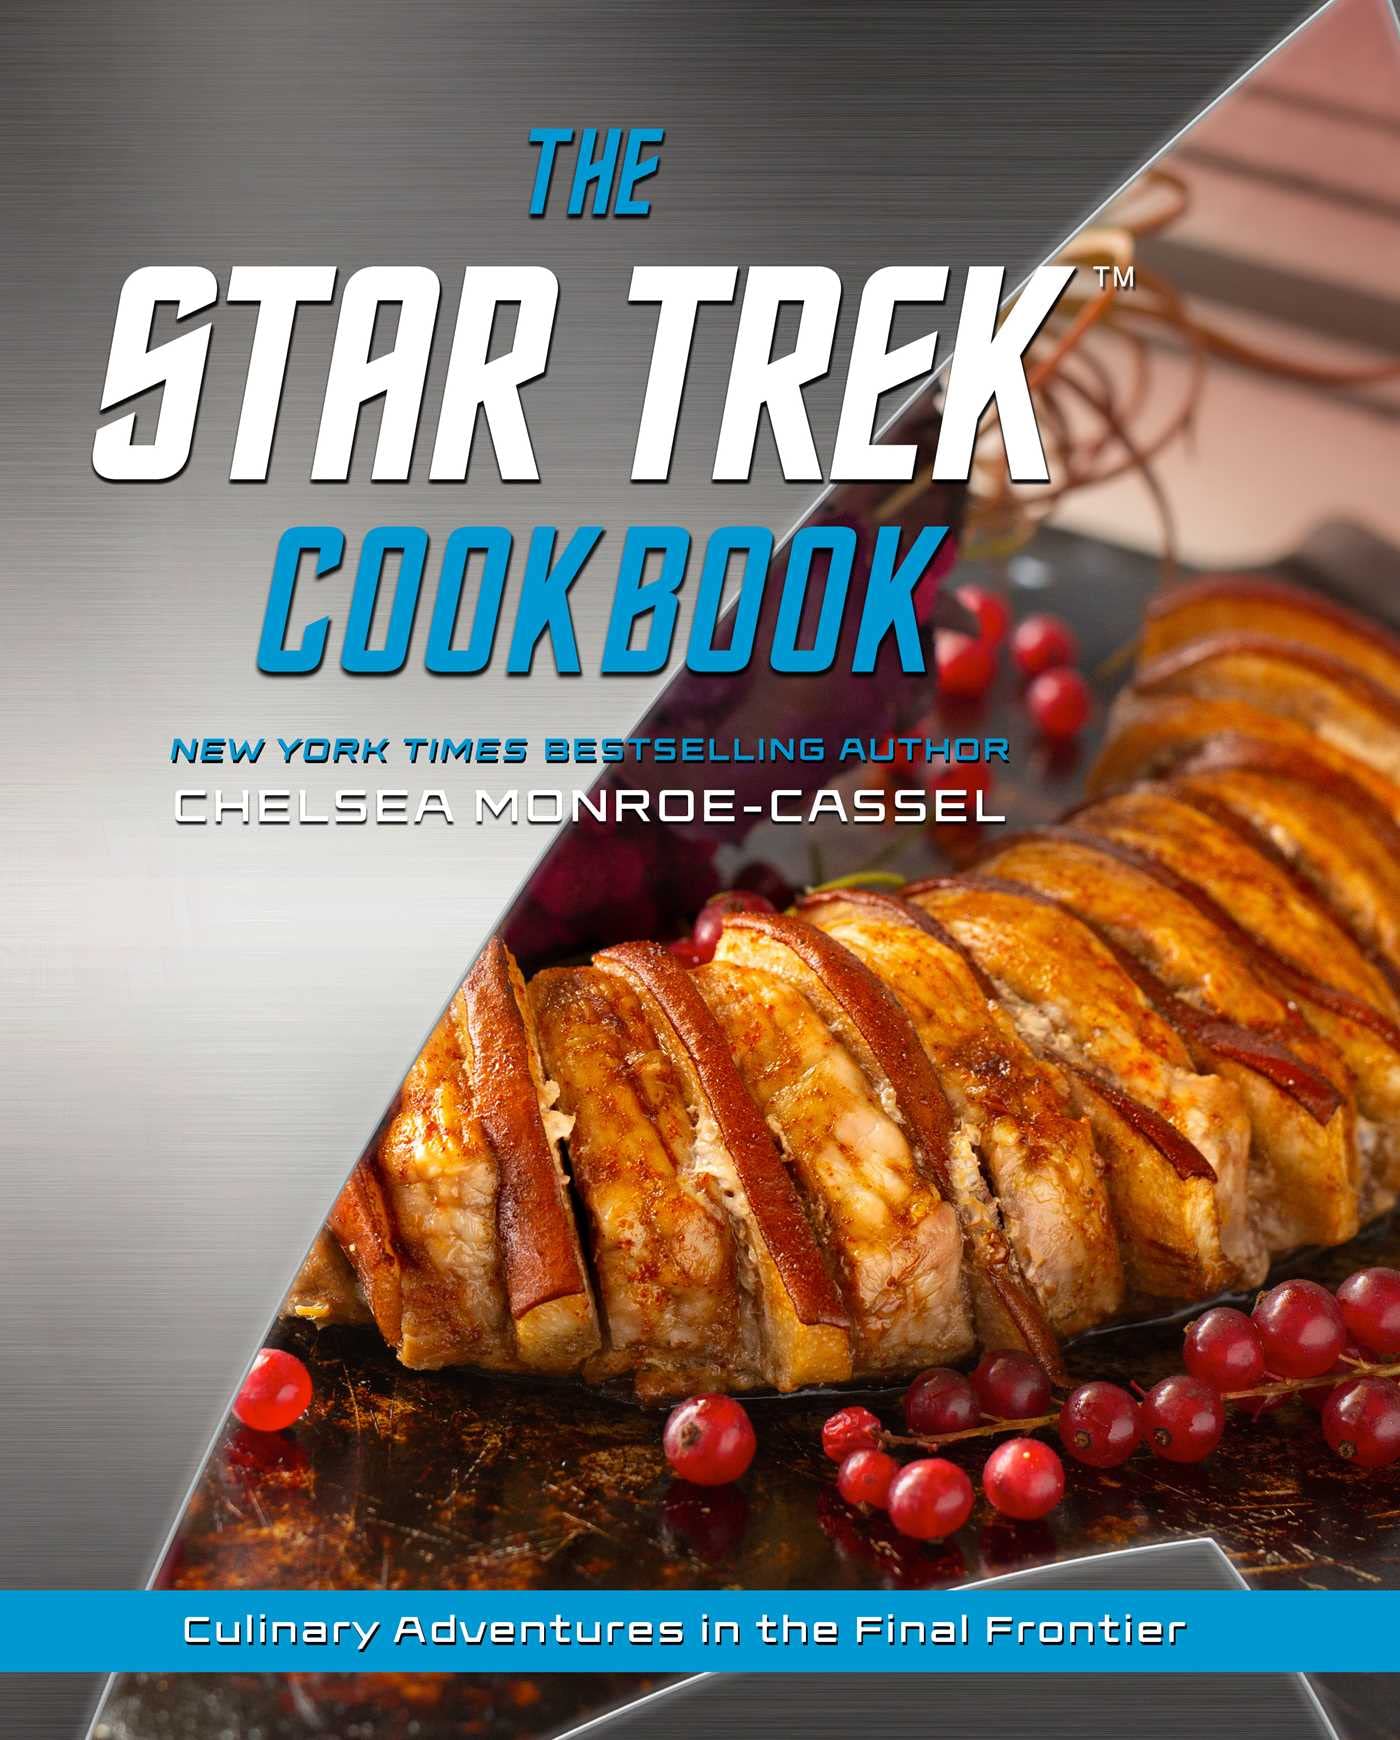 star trek cookbook review